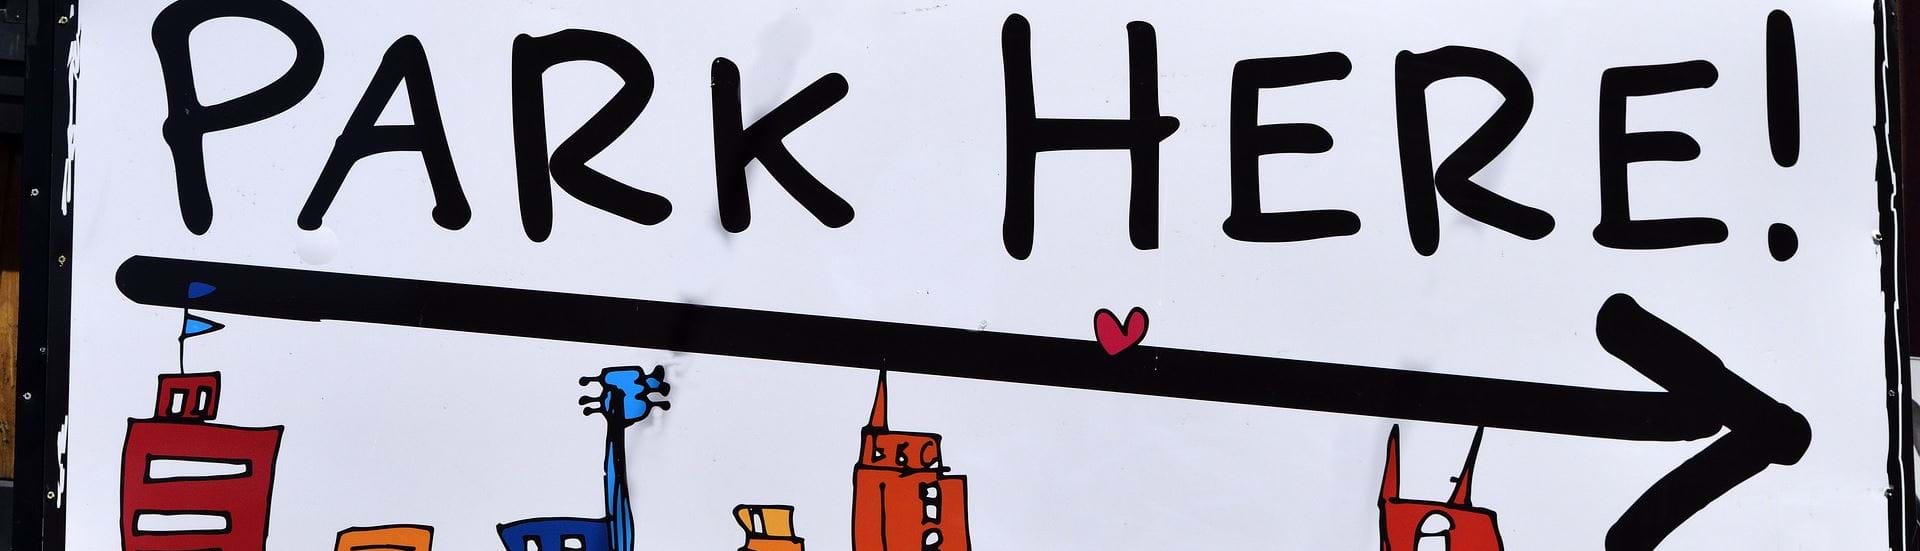 Et skilt med en illustraton af en storby med højhuse og skriften "park here!".